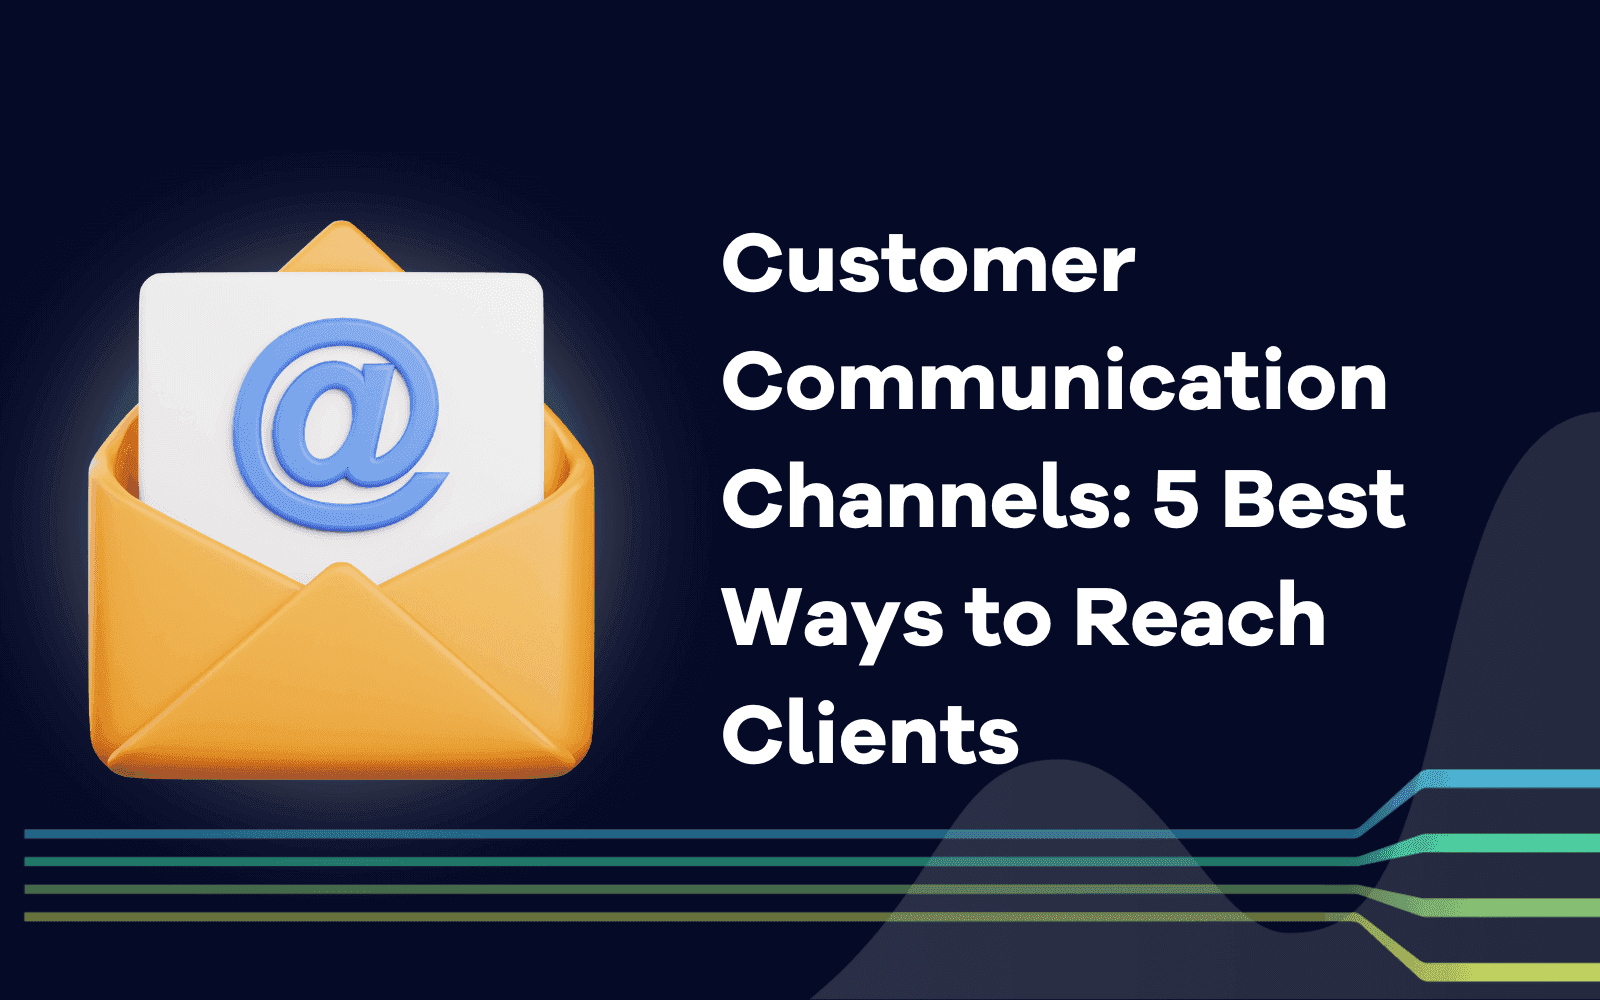 Kanaler for kundekommunikasjon: De 5 beste måtene å nå ut til kundene på